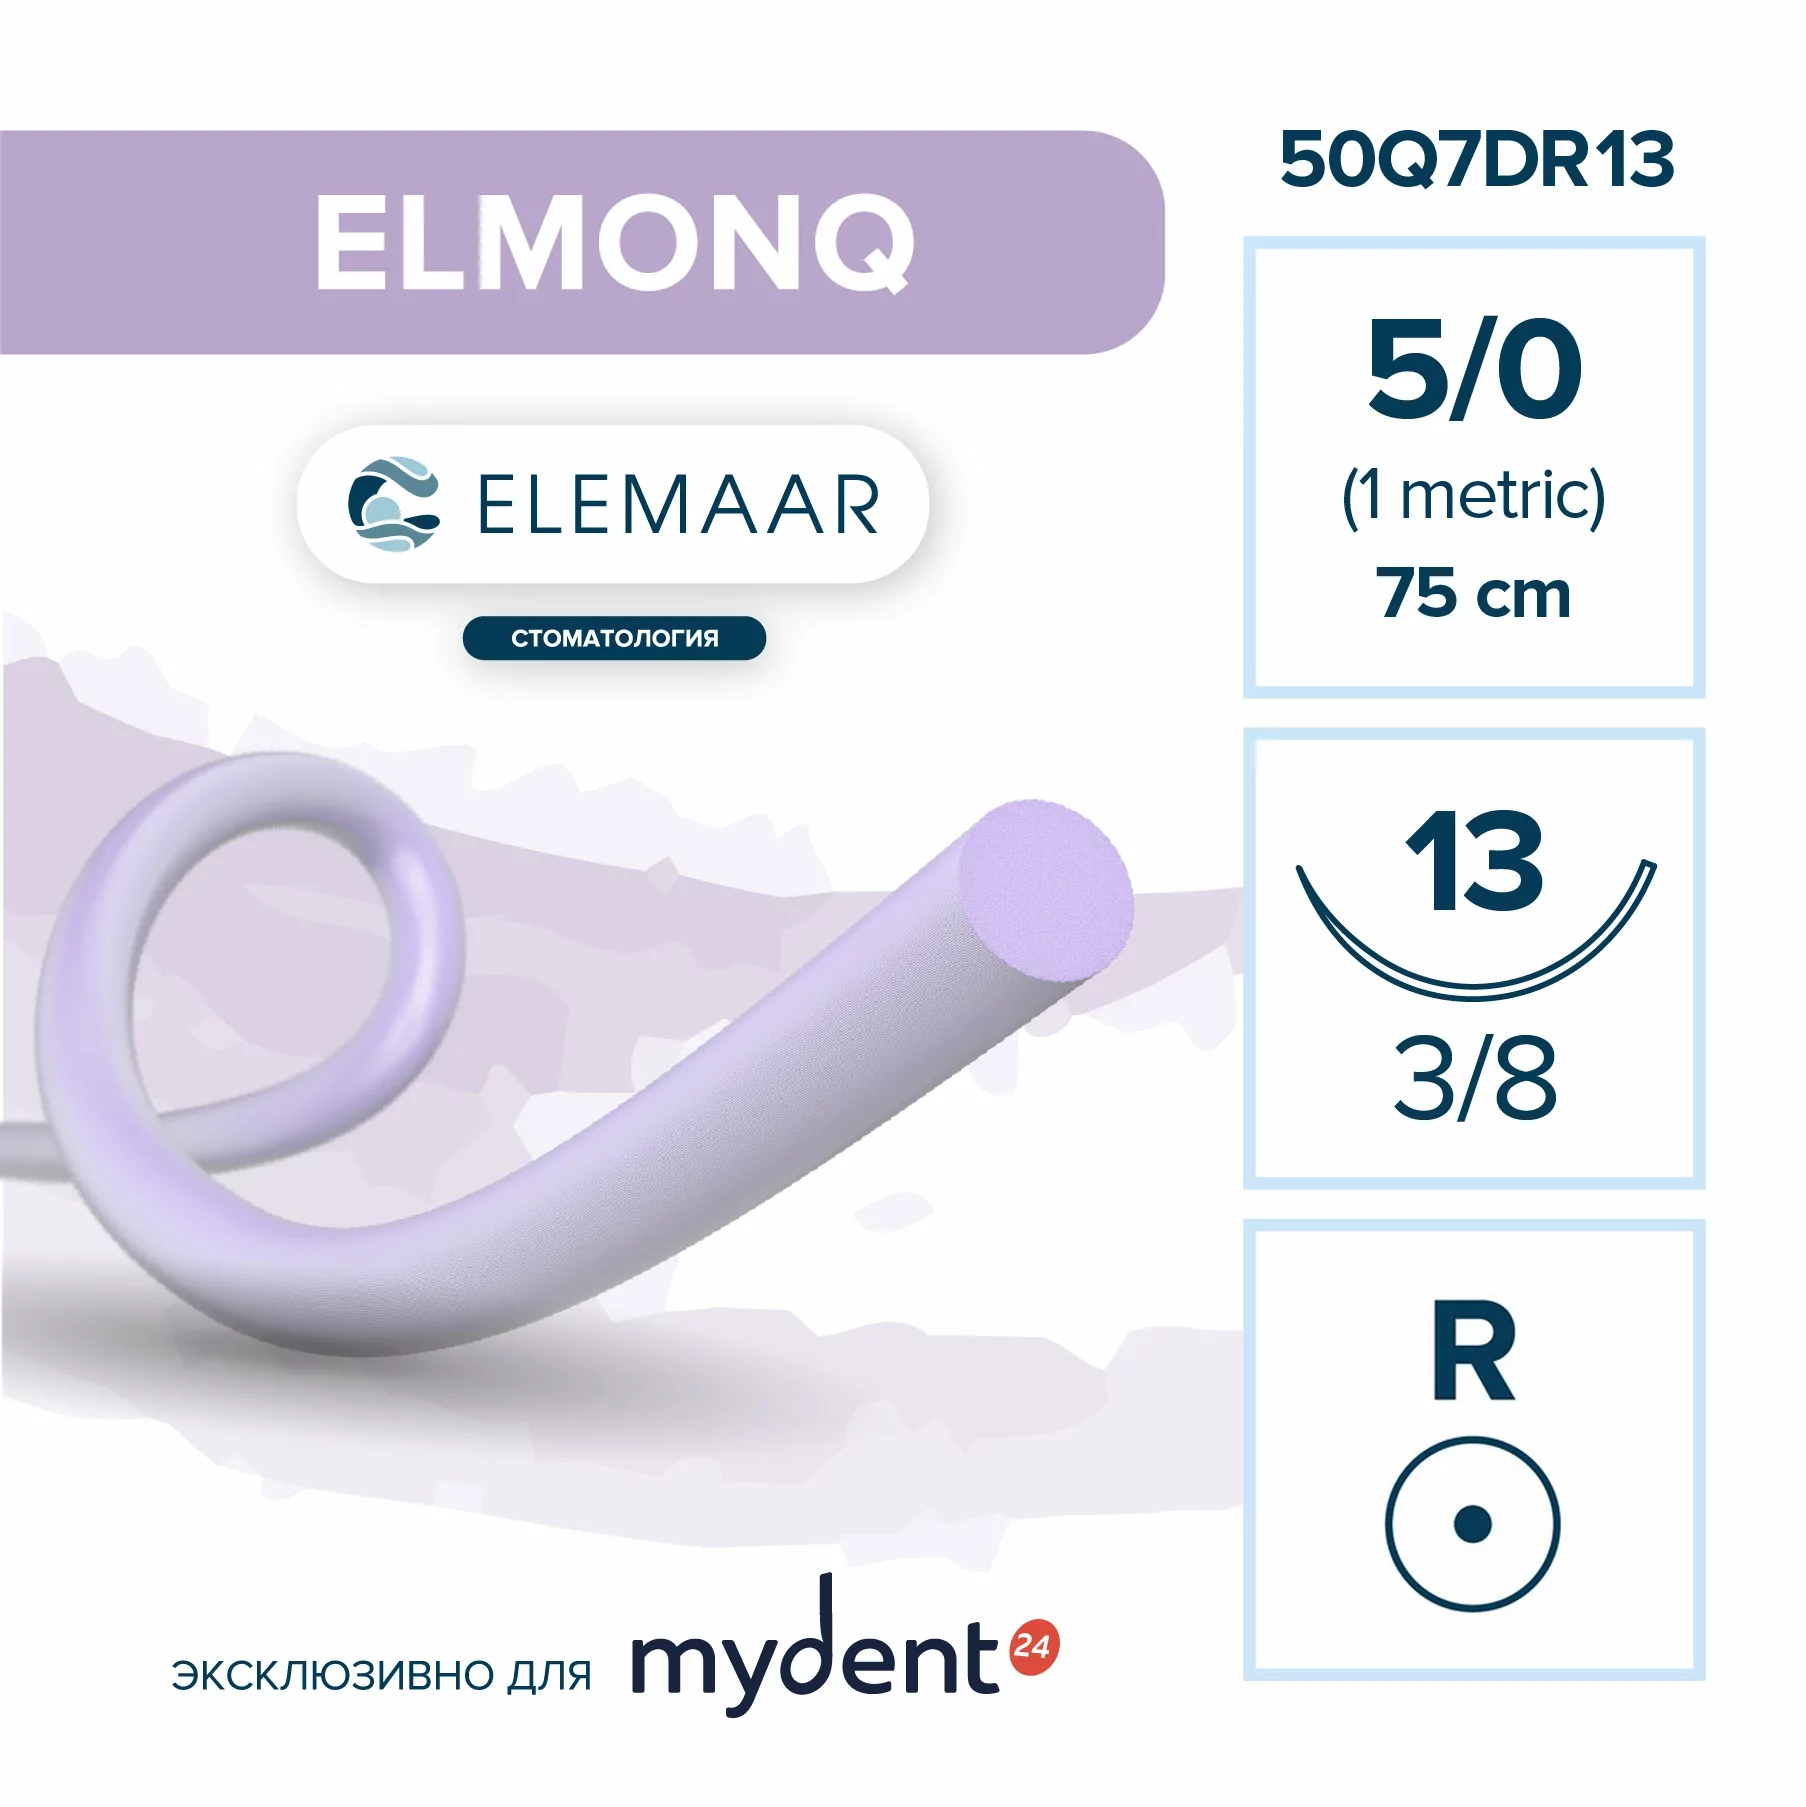 Шовный материал ELMONQ 5/0 (12 шт, 75 см, 3/8, 13 мм, колющая)